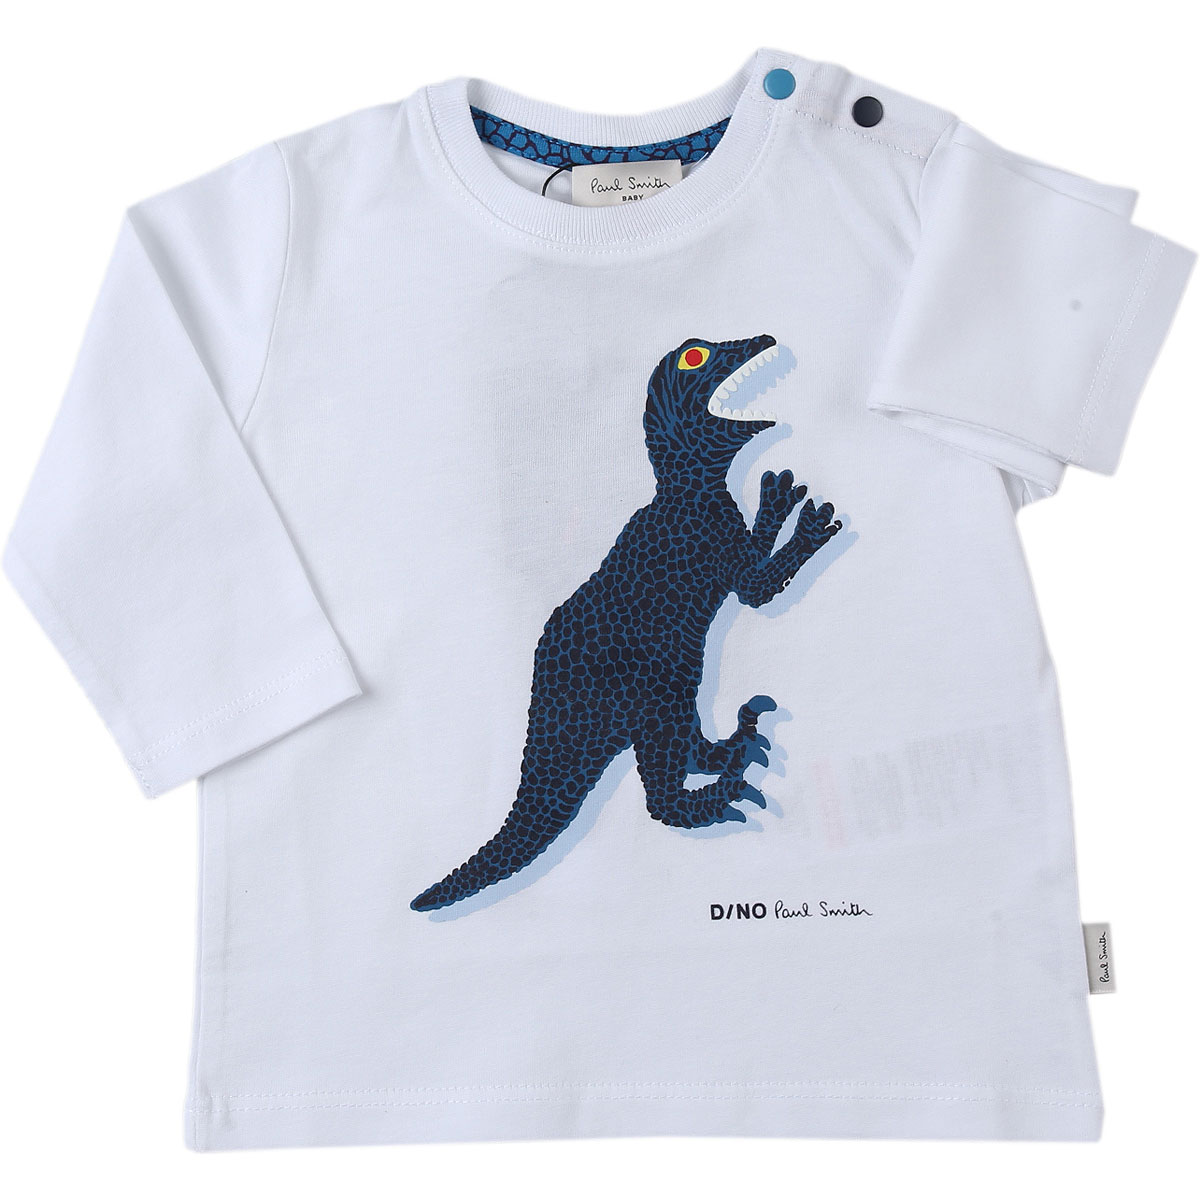 Paul Smith Baby T-Shirt für Jungen Günstig im Sale, Weiss, Baumwolle, 2017, 12 M 18M 2Y 3Y 6M 9M